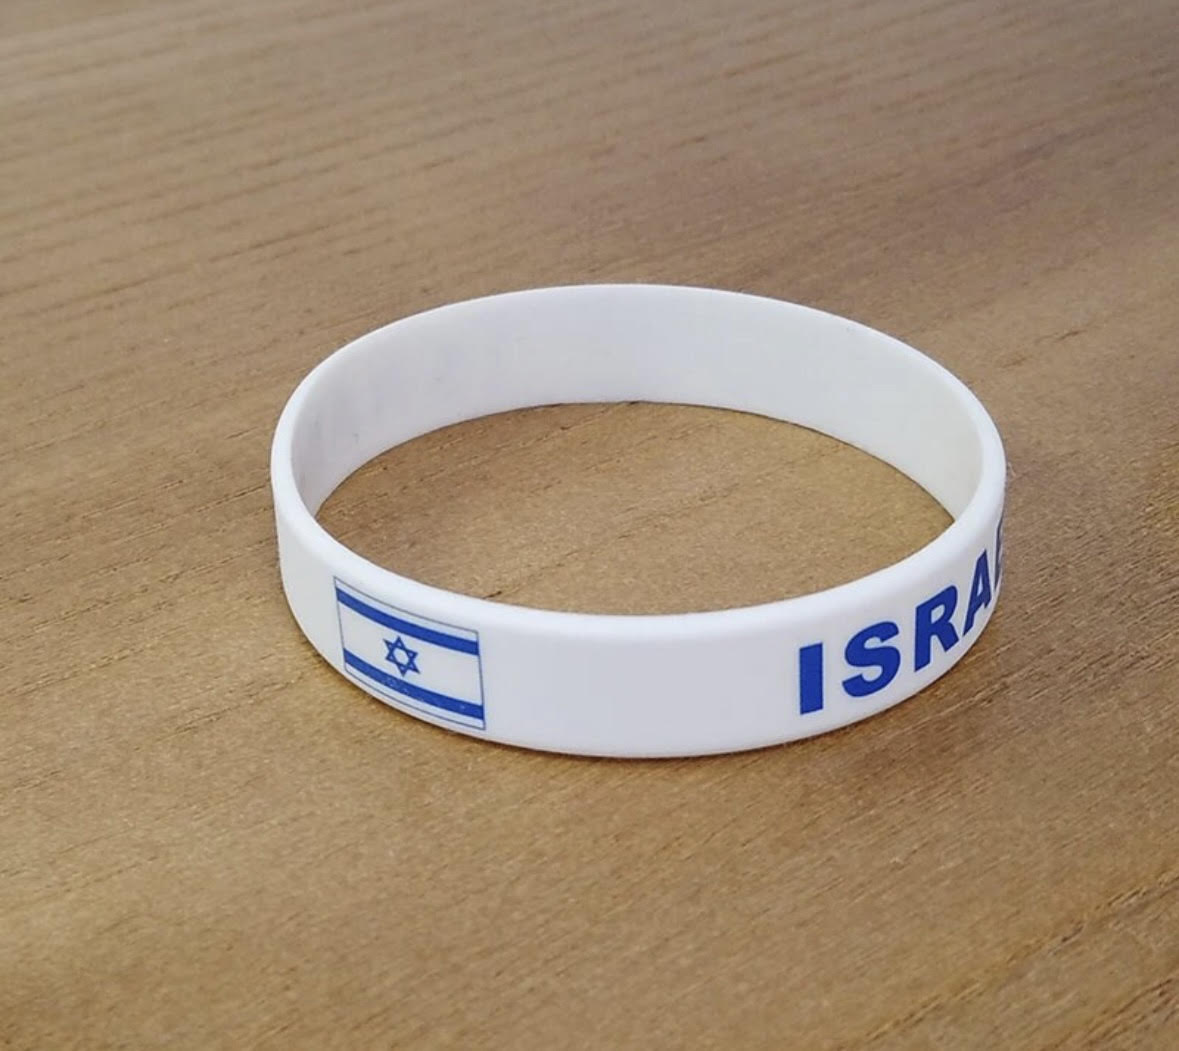 Israel Silicone Bracelet